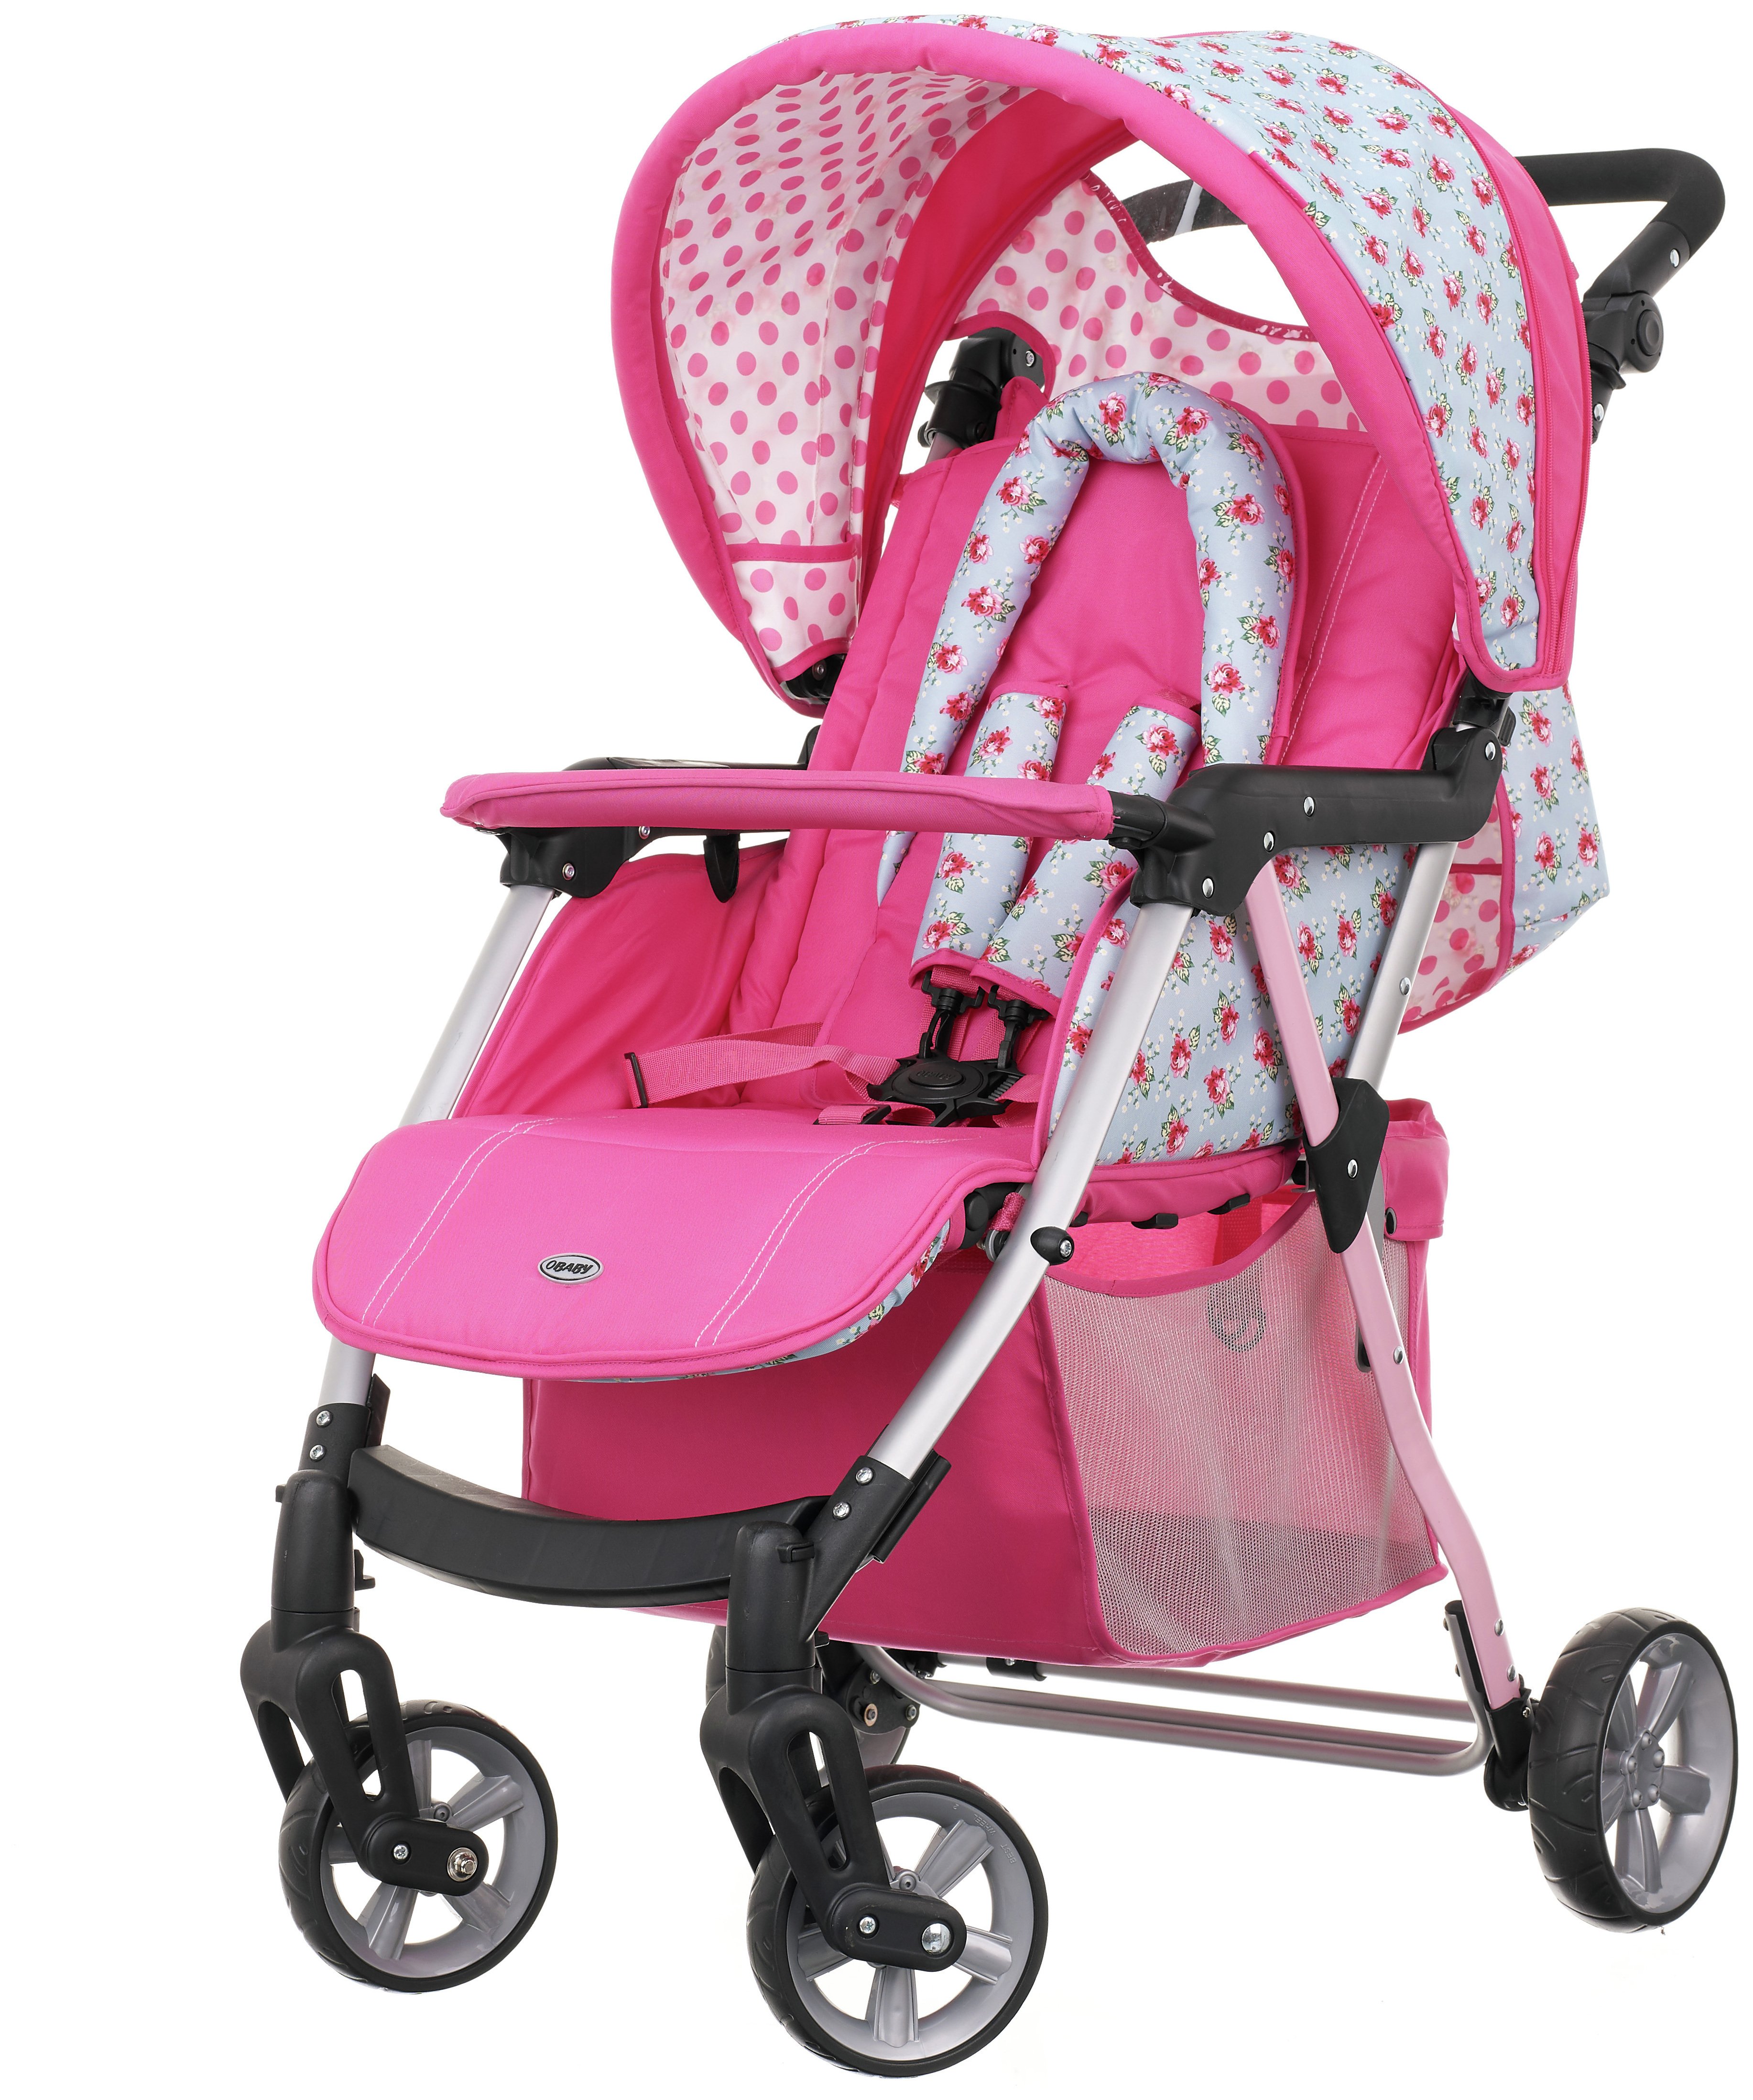 obaby little princess stroller